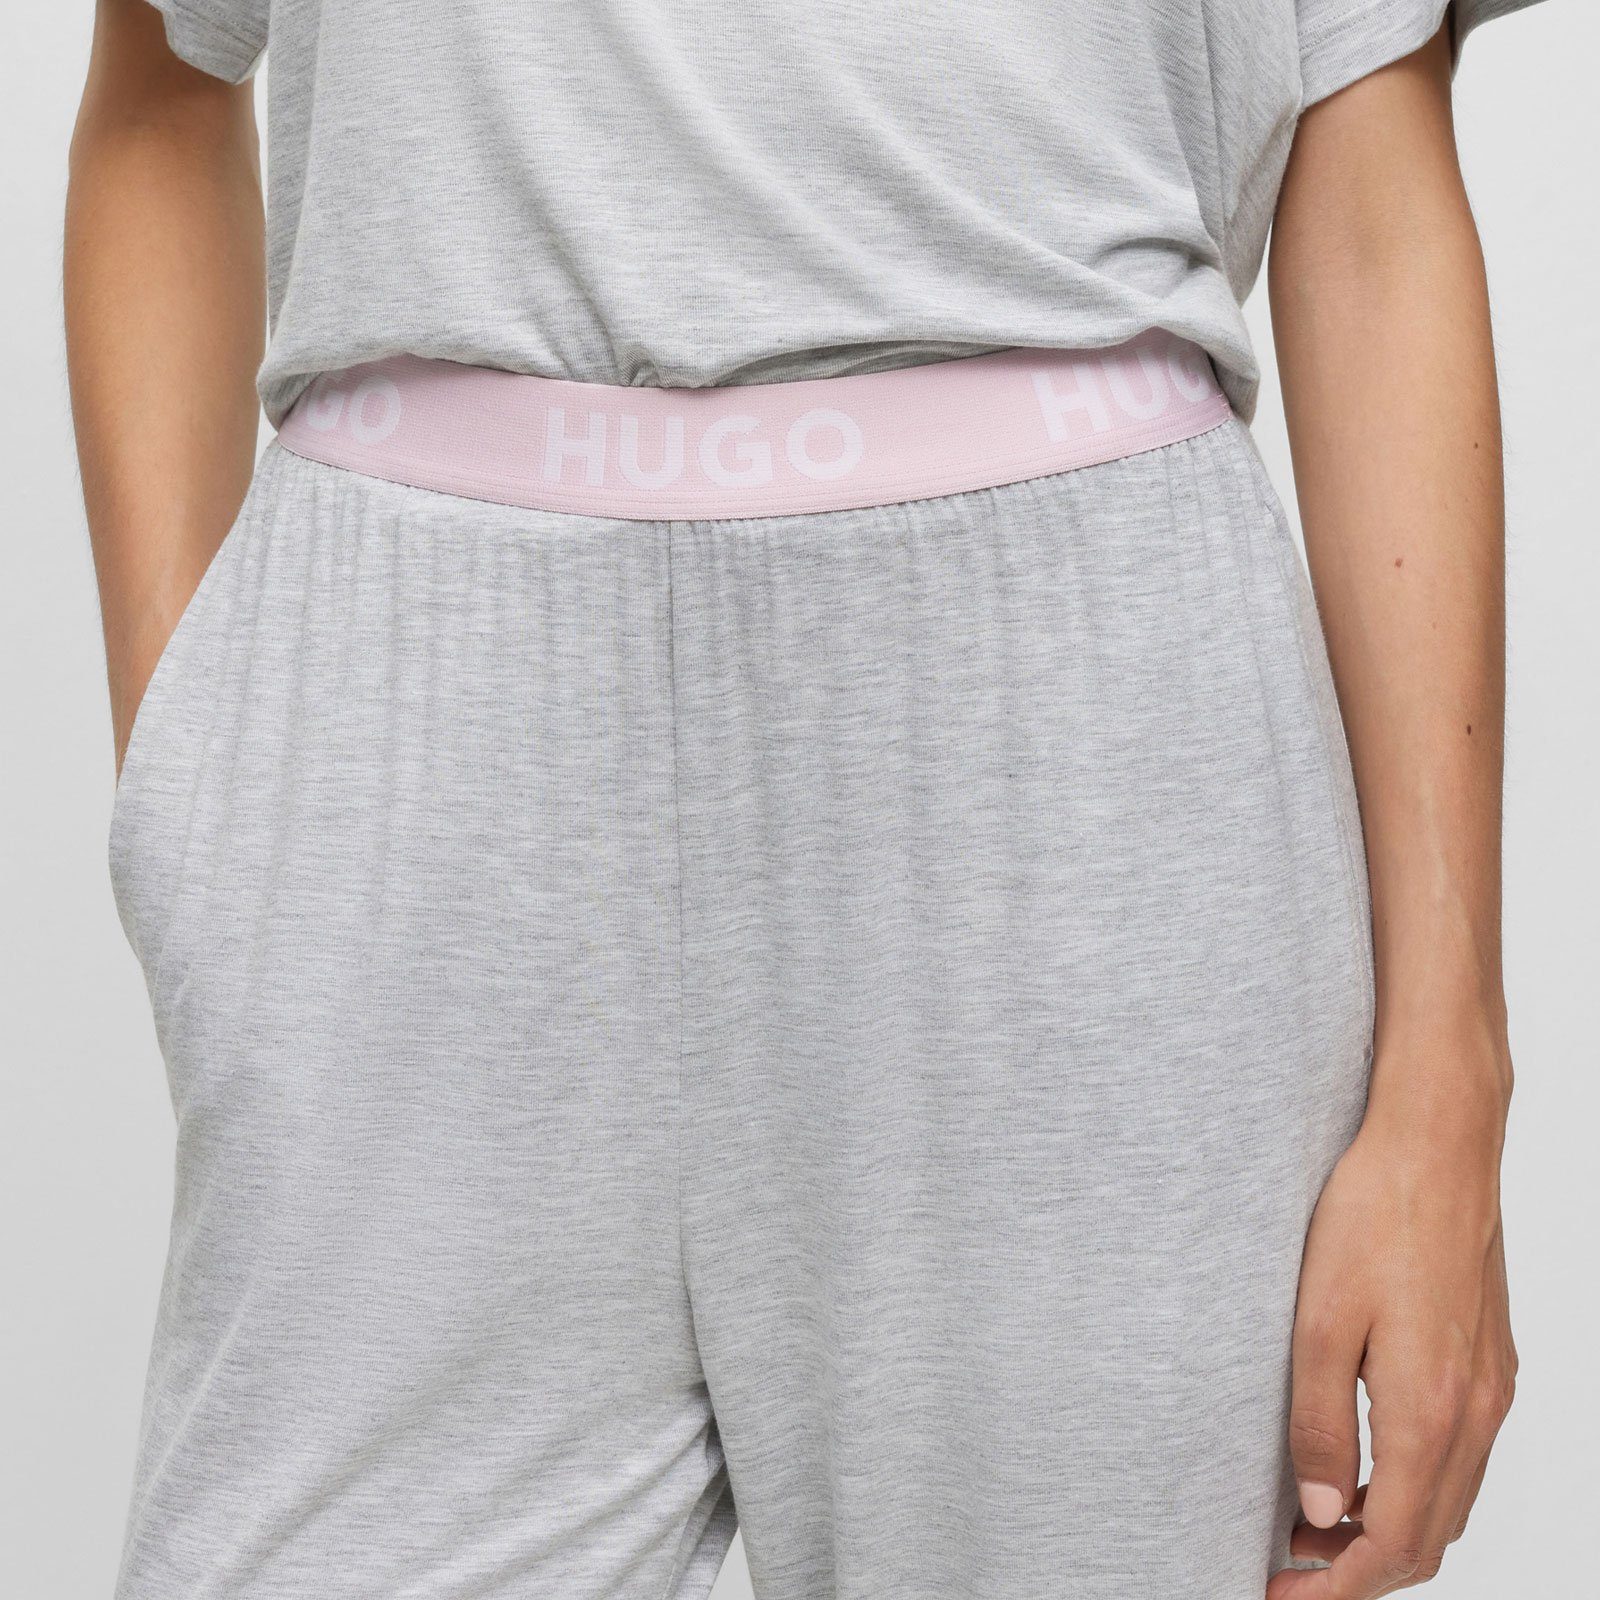 Pants Unite grey mit sichtbarem Marken-Logos Pyjamahose Bund HUGO 035 mit